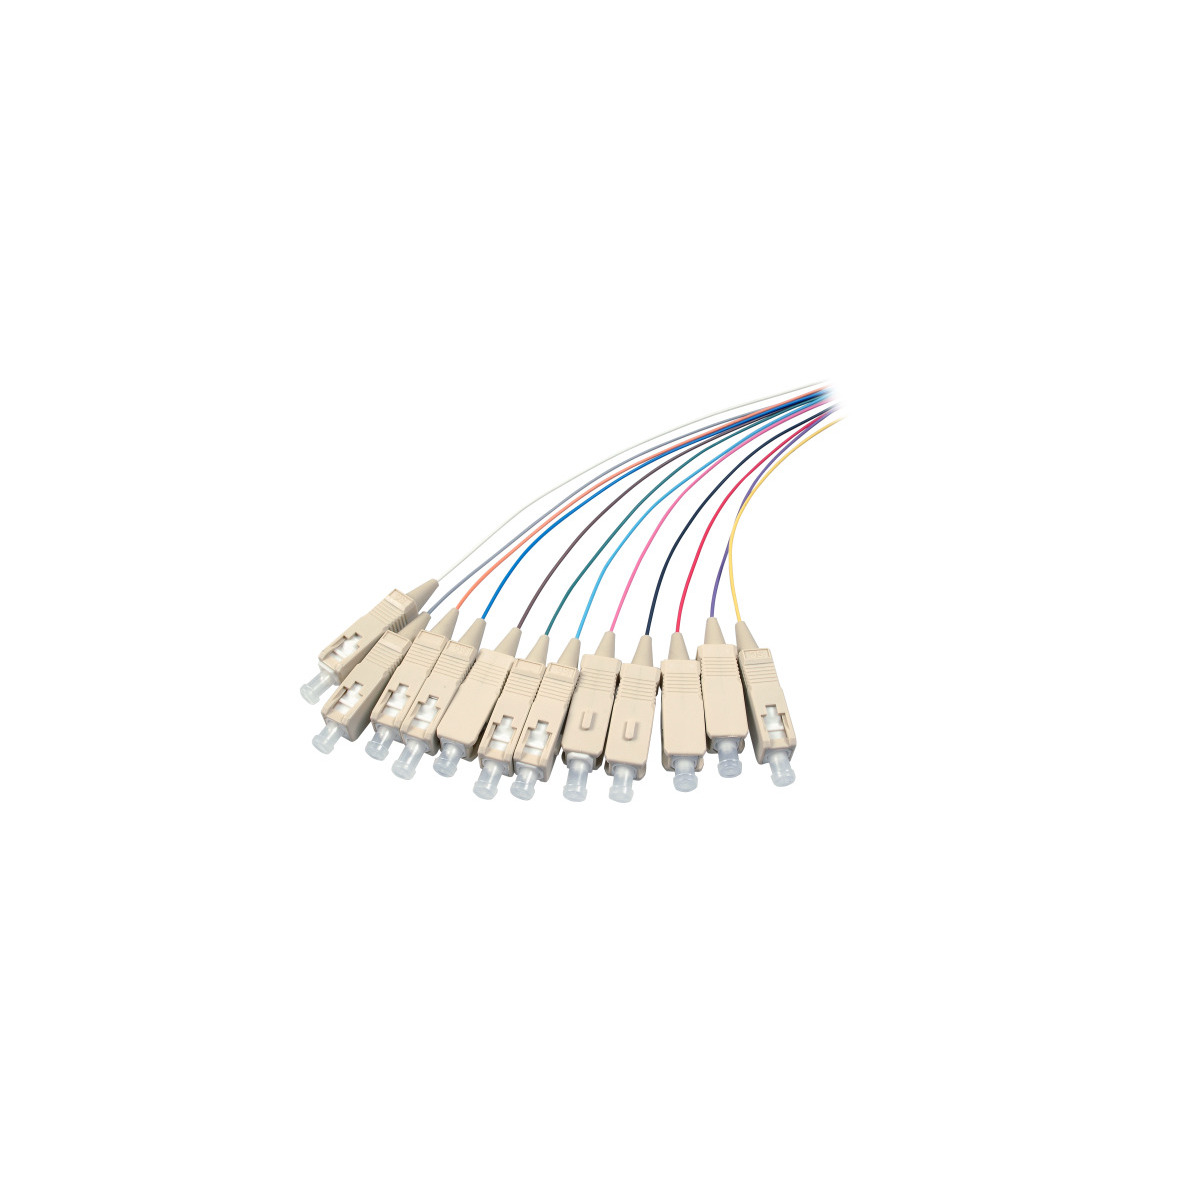 COMMUNIK Kabel Pigtails / SC m 2 Glasfaserkabel, Faserpigtails